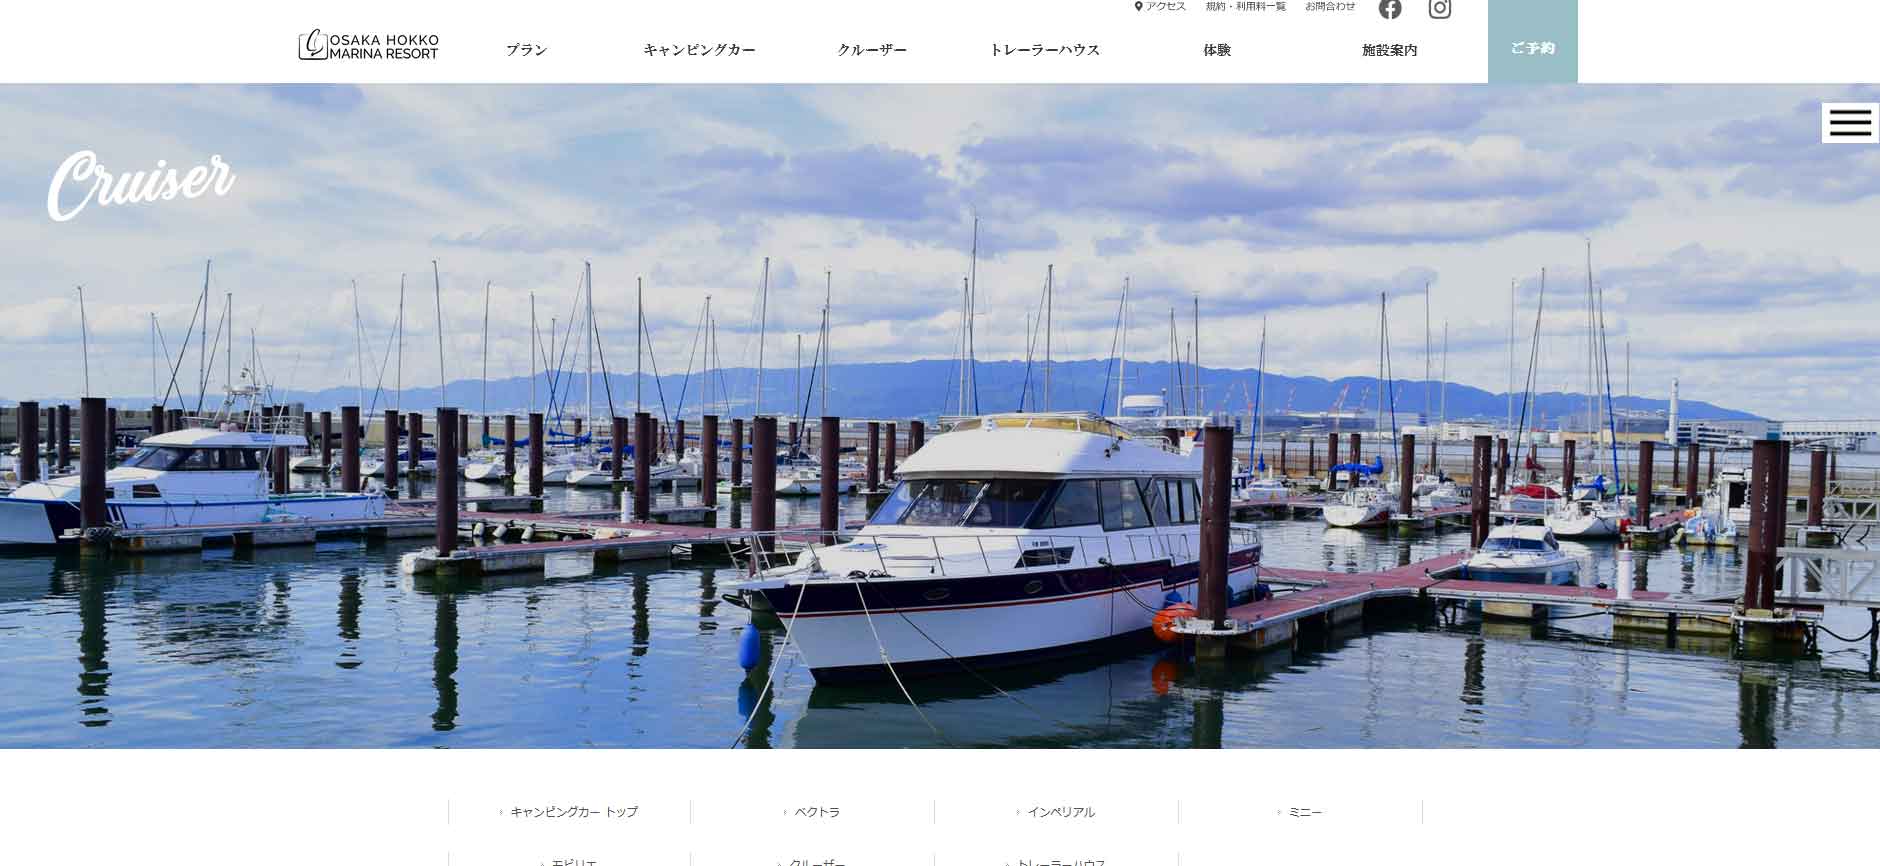 大阪北港マリーナ内にある船上宿泊サービスのWEBサイトのキャプチャ